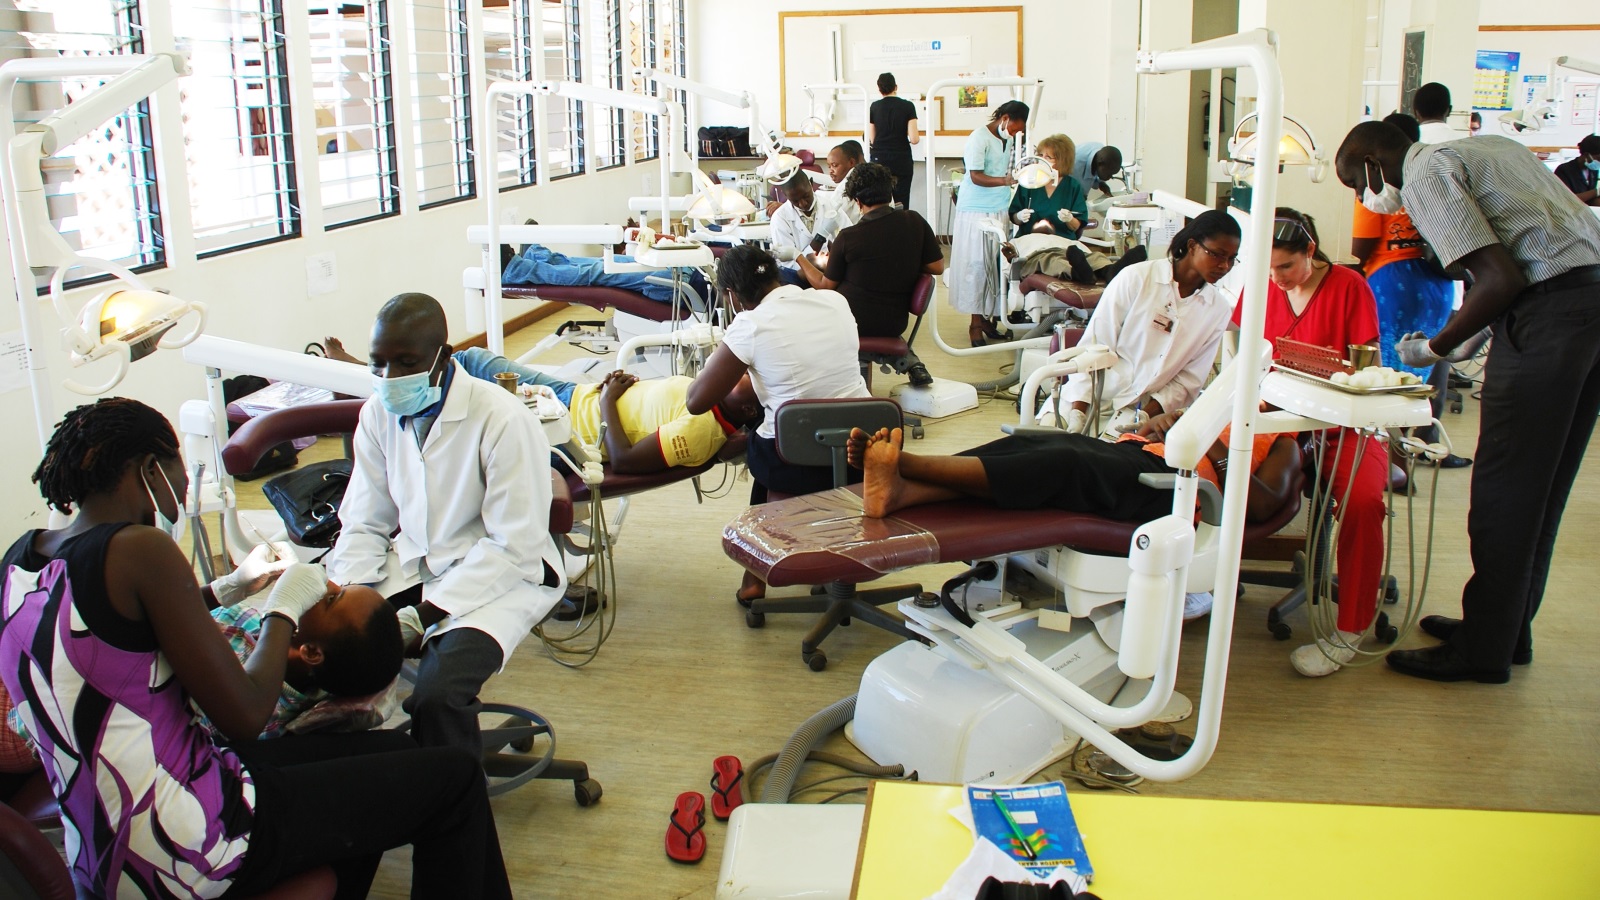 تستثمر رواندا ربع ناتجها الإجمالي في الصحة وقد وضعت برنامجا لتطوير المستشفيات والكفاءات . (الجزيرة)